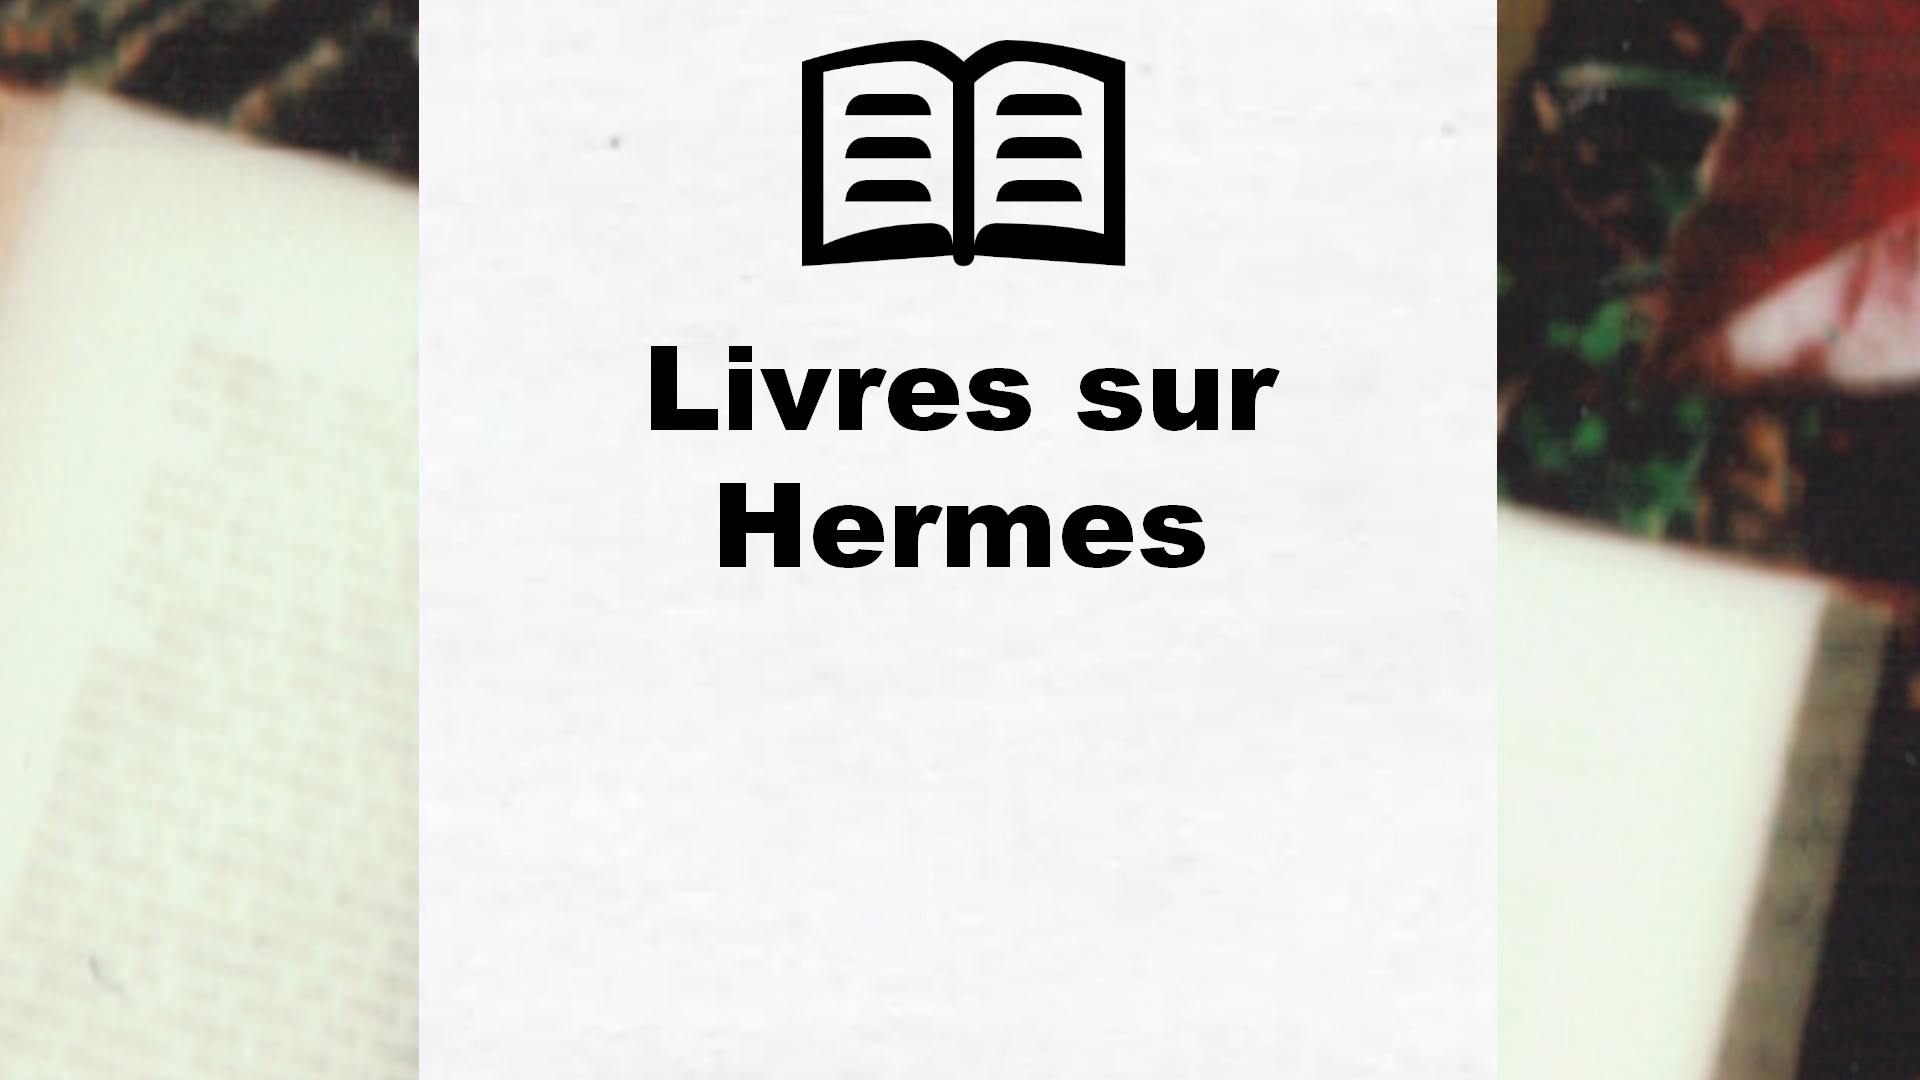 Livres sur Hermes